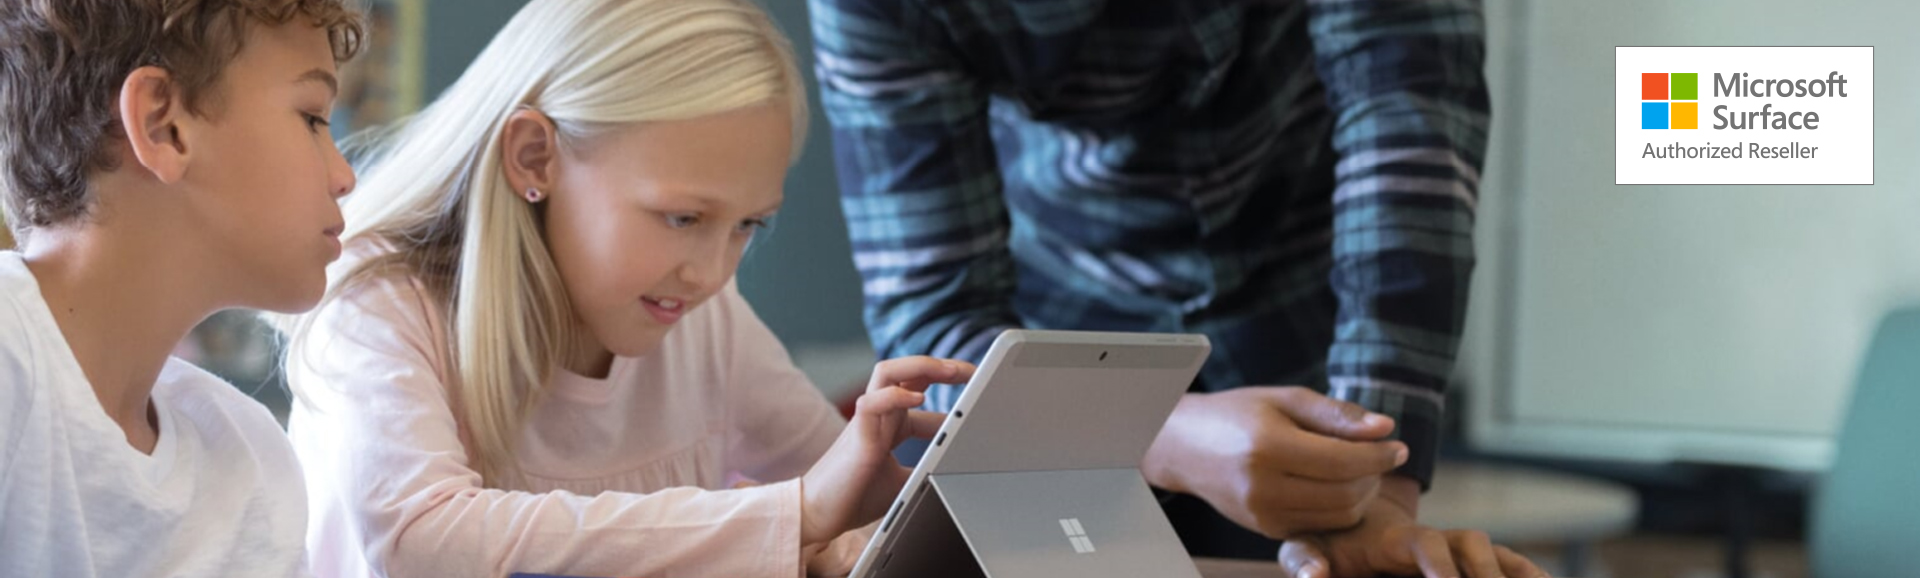 Microsoft Surface wird von einer Schülerin im Unterricht verwendet